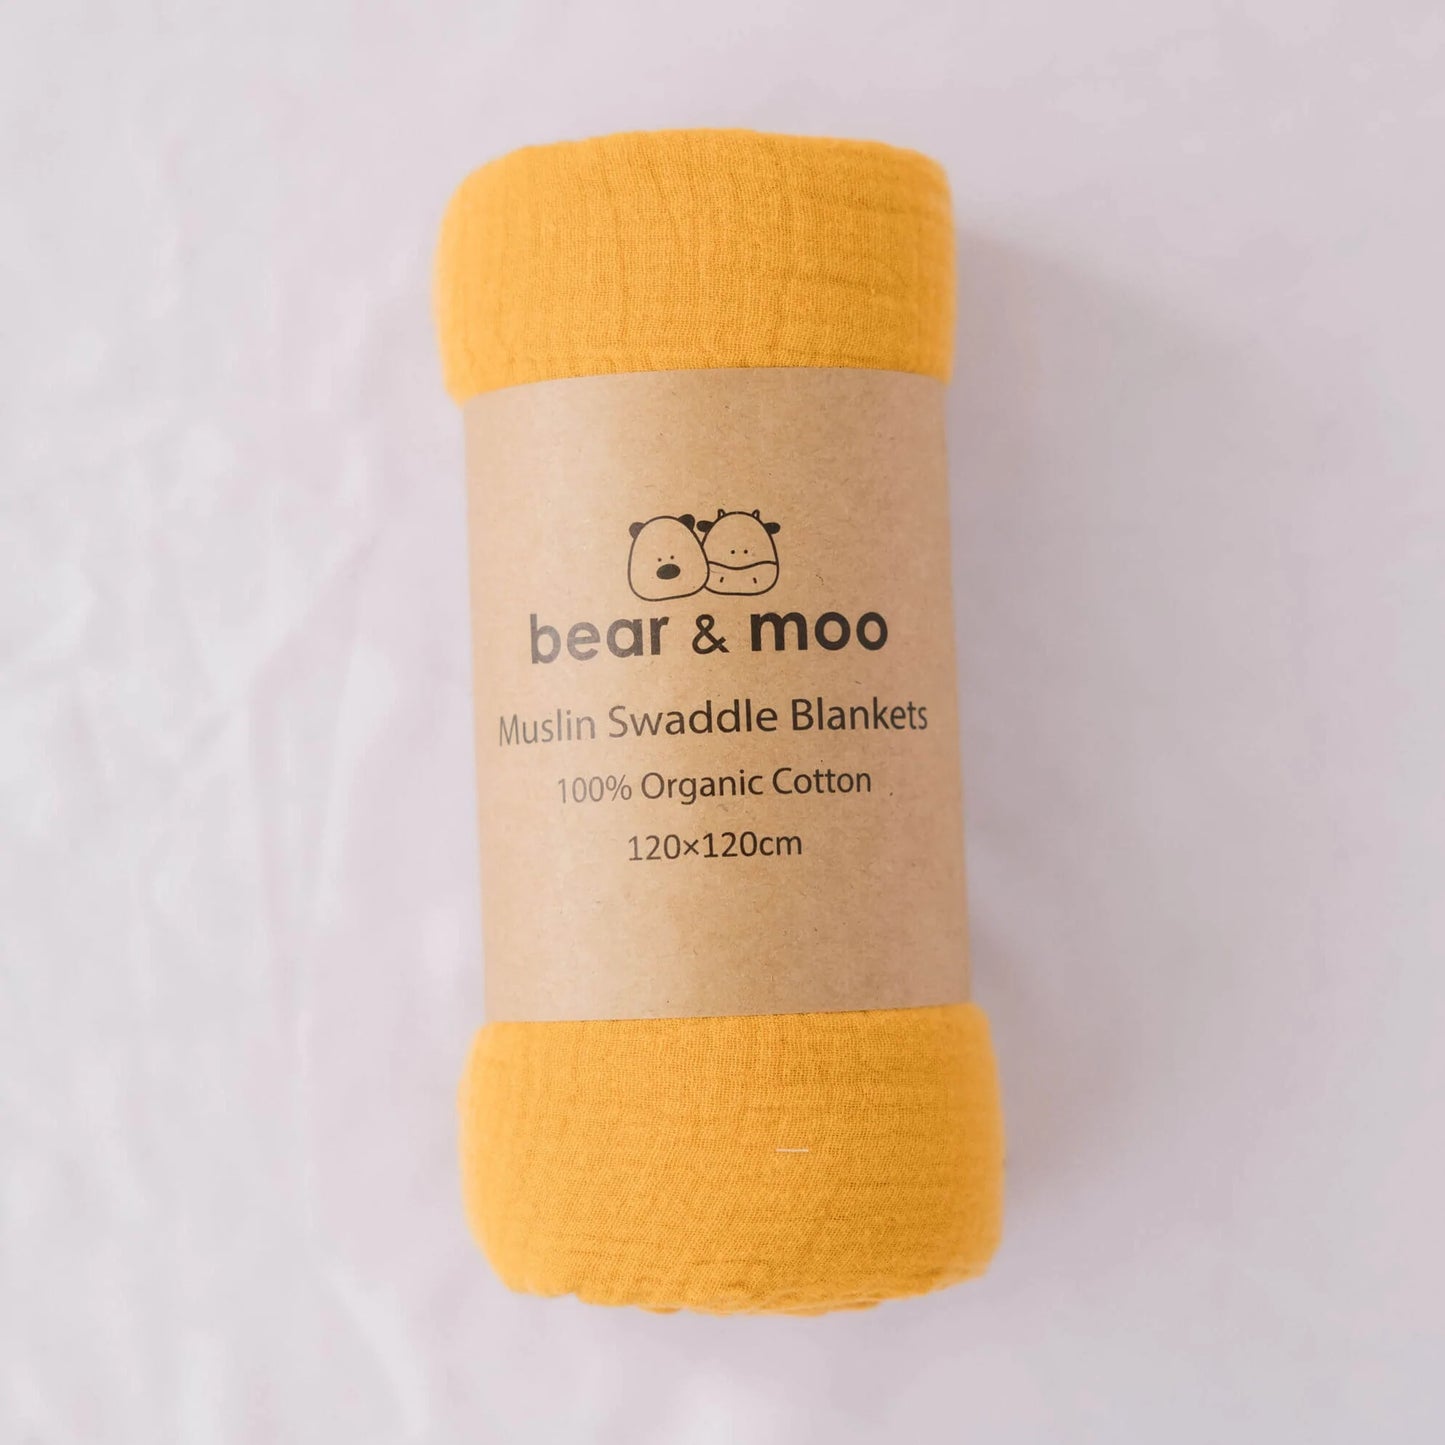 Bear & Moo Muslin Swaddle Blanket